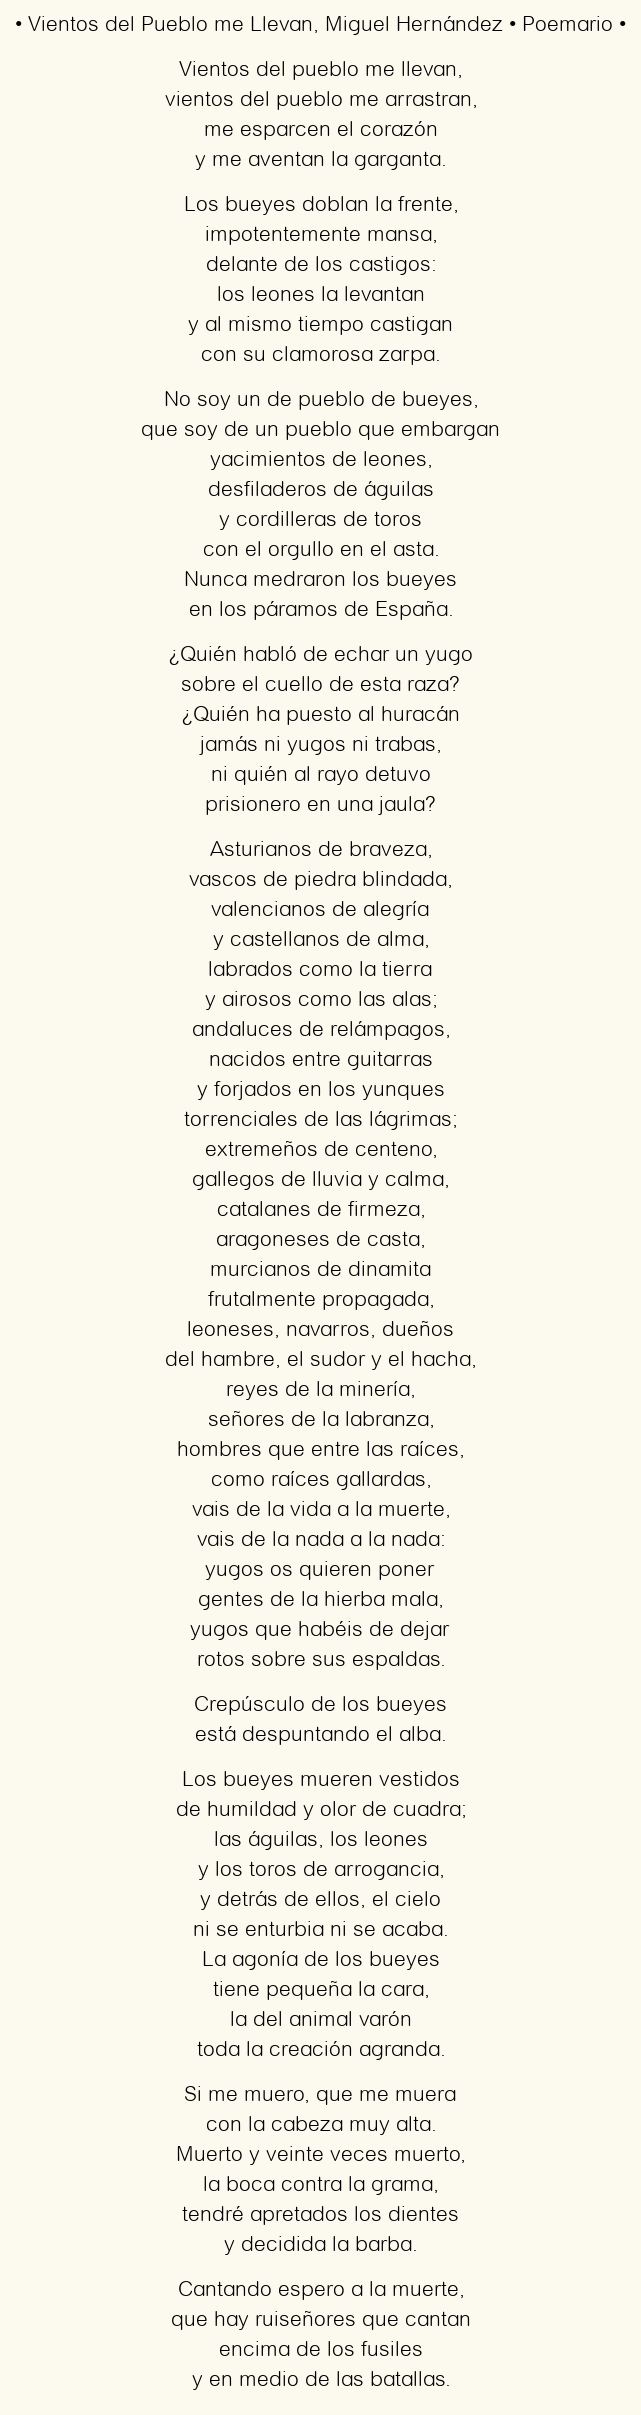 Imagen con el poema Vientos del Pueblo me Llevan, por Miguel Hernández